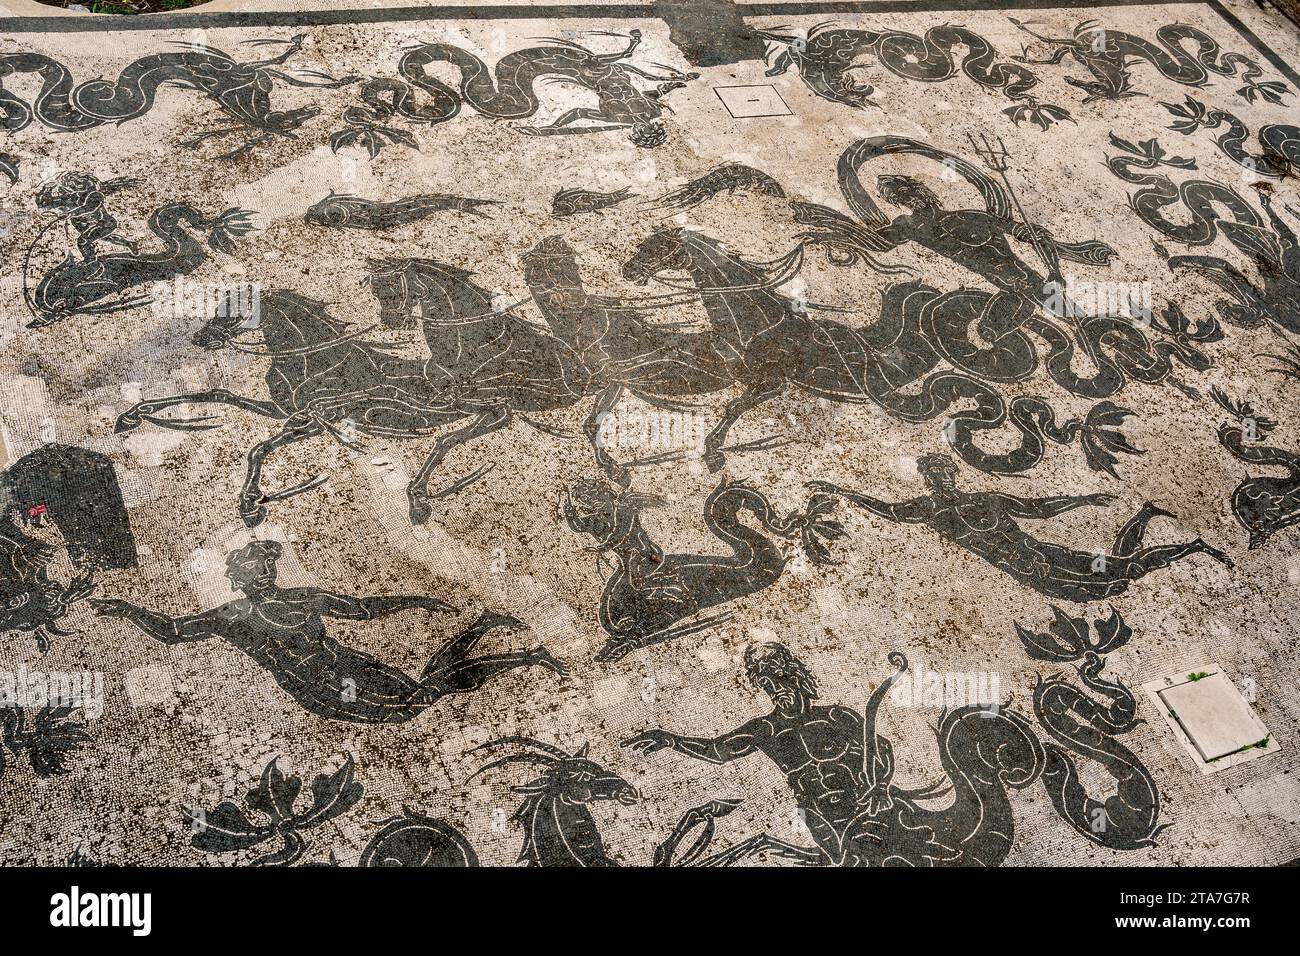 Partie des ruines romaines du port à Ostie, mosaïques. Italie Banque D'Images